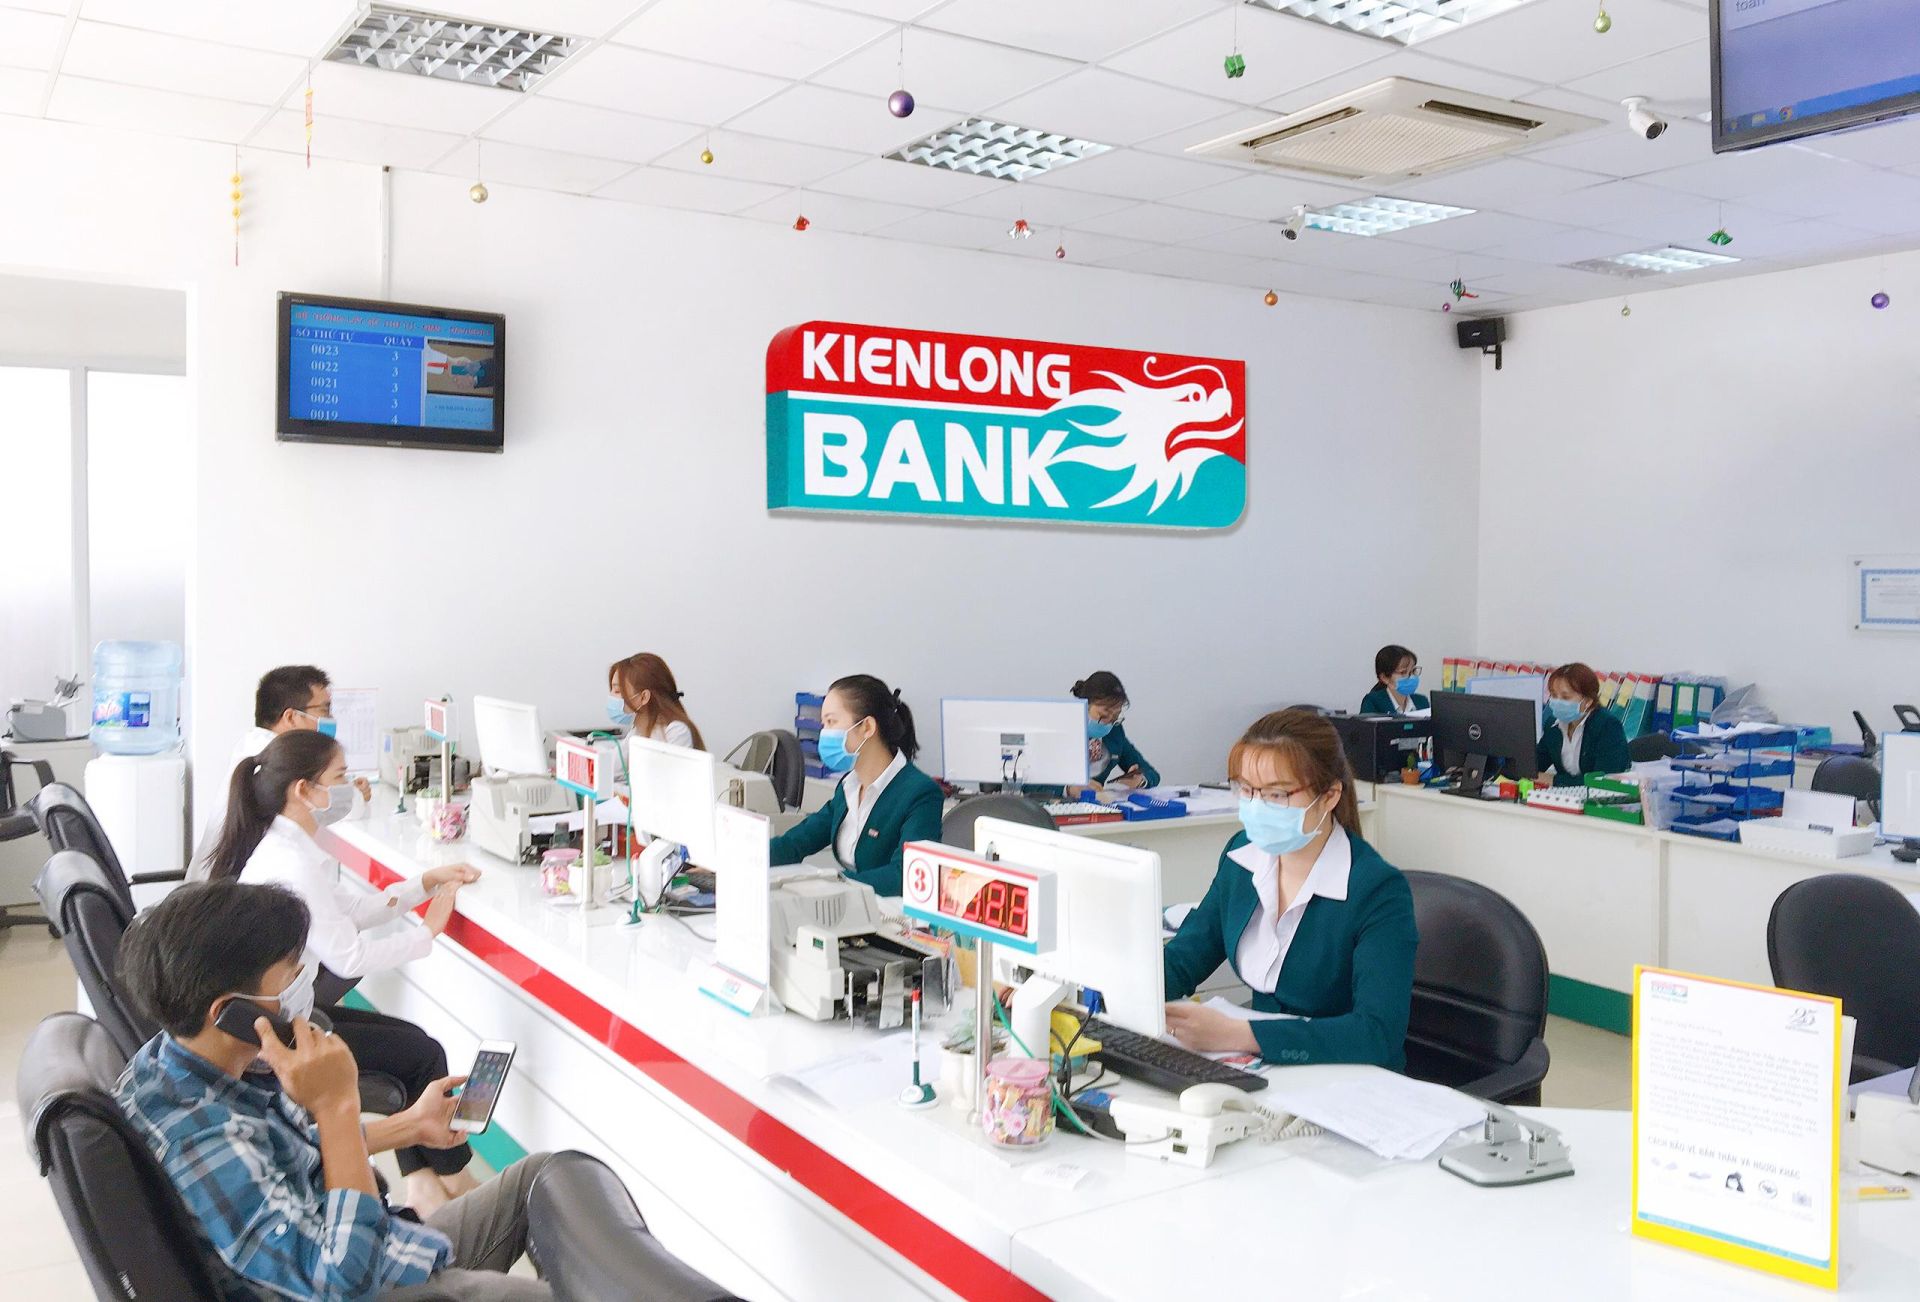 KienlongBank sẽ có nhiều đổi mới trong bộ máy lãnh đạo quản trị, điều hành